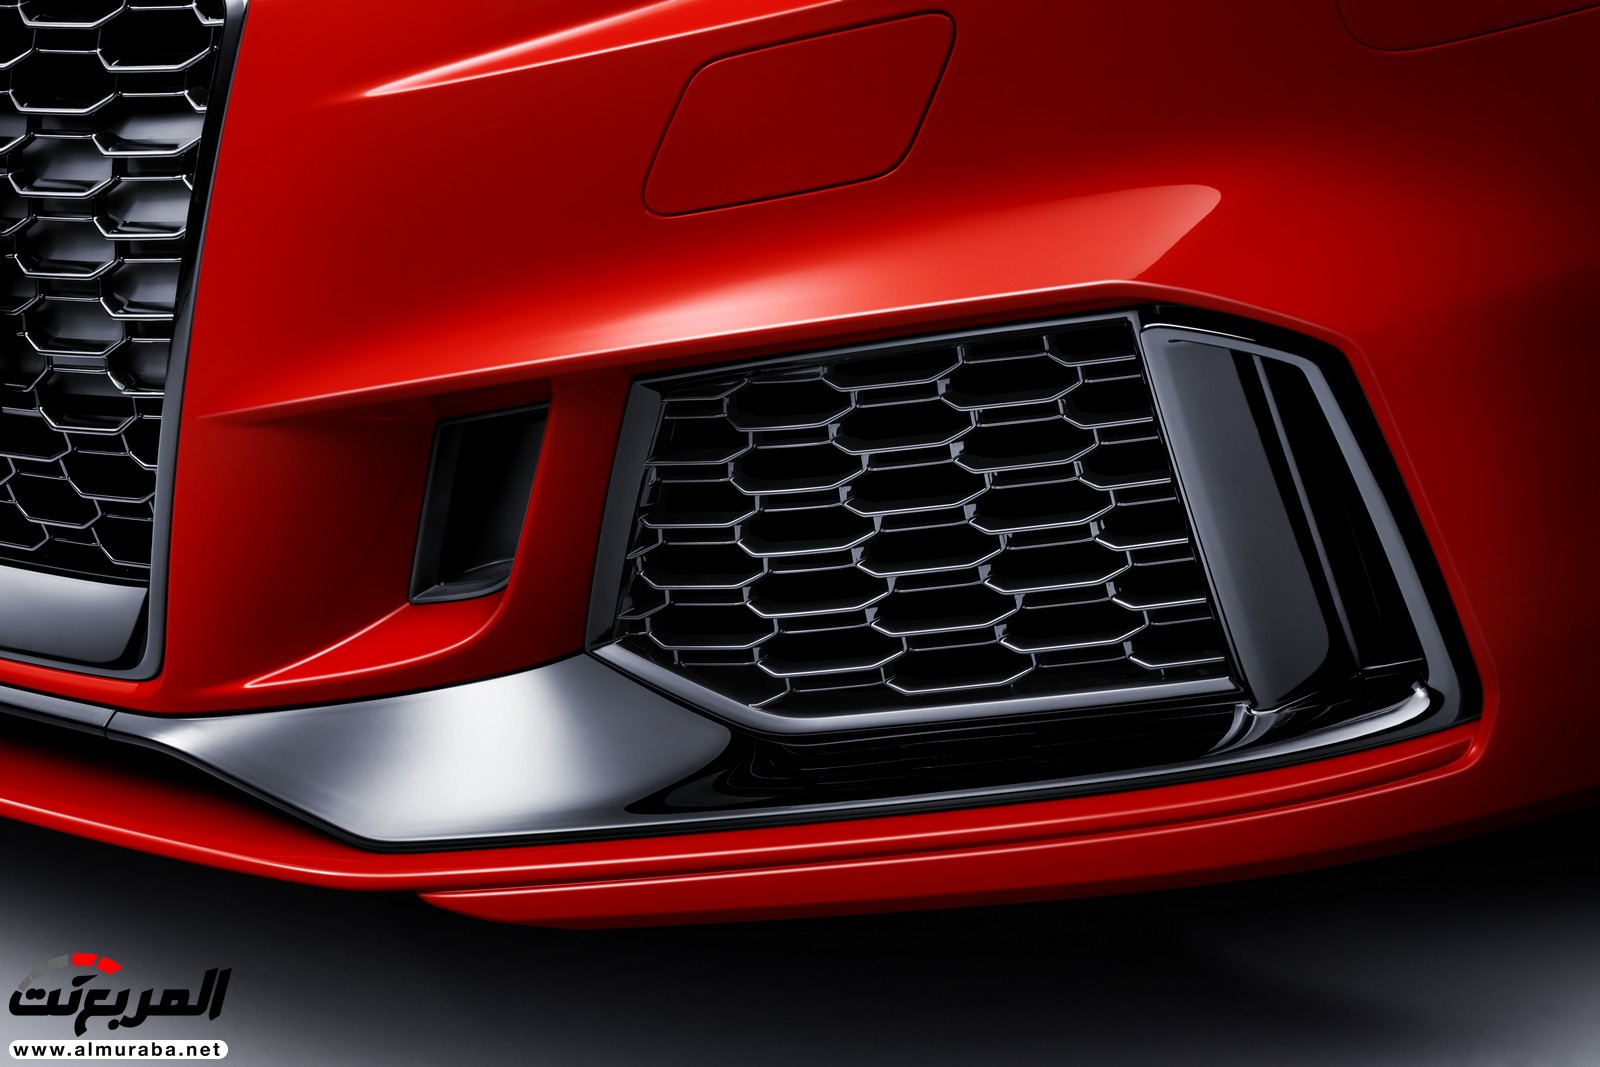 "أودي" تكشف عن RS3 الجديدة كليا 2018 بقوة 395 حصان Audi 37